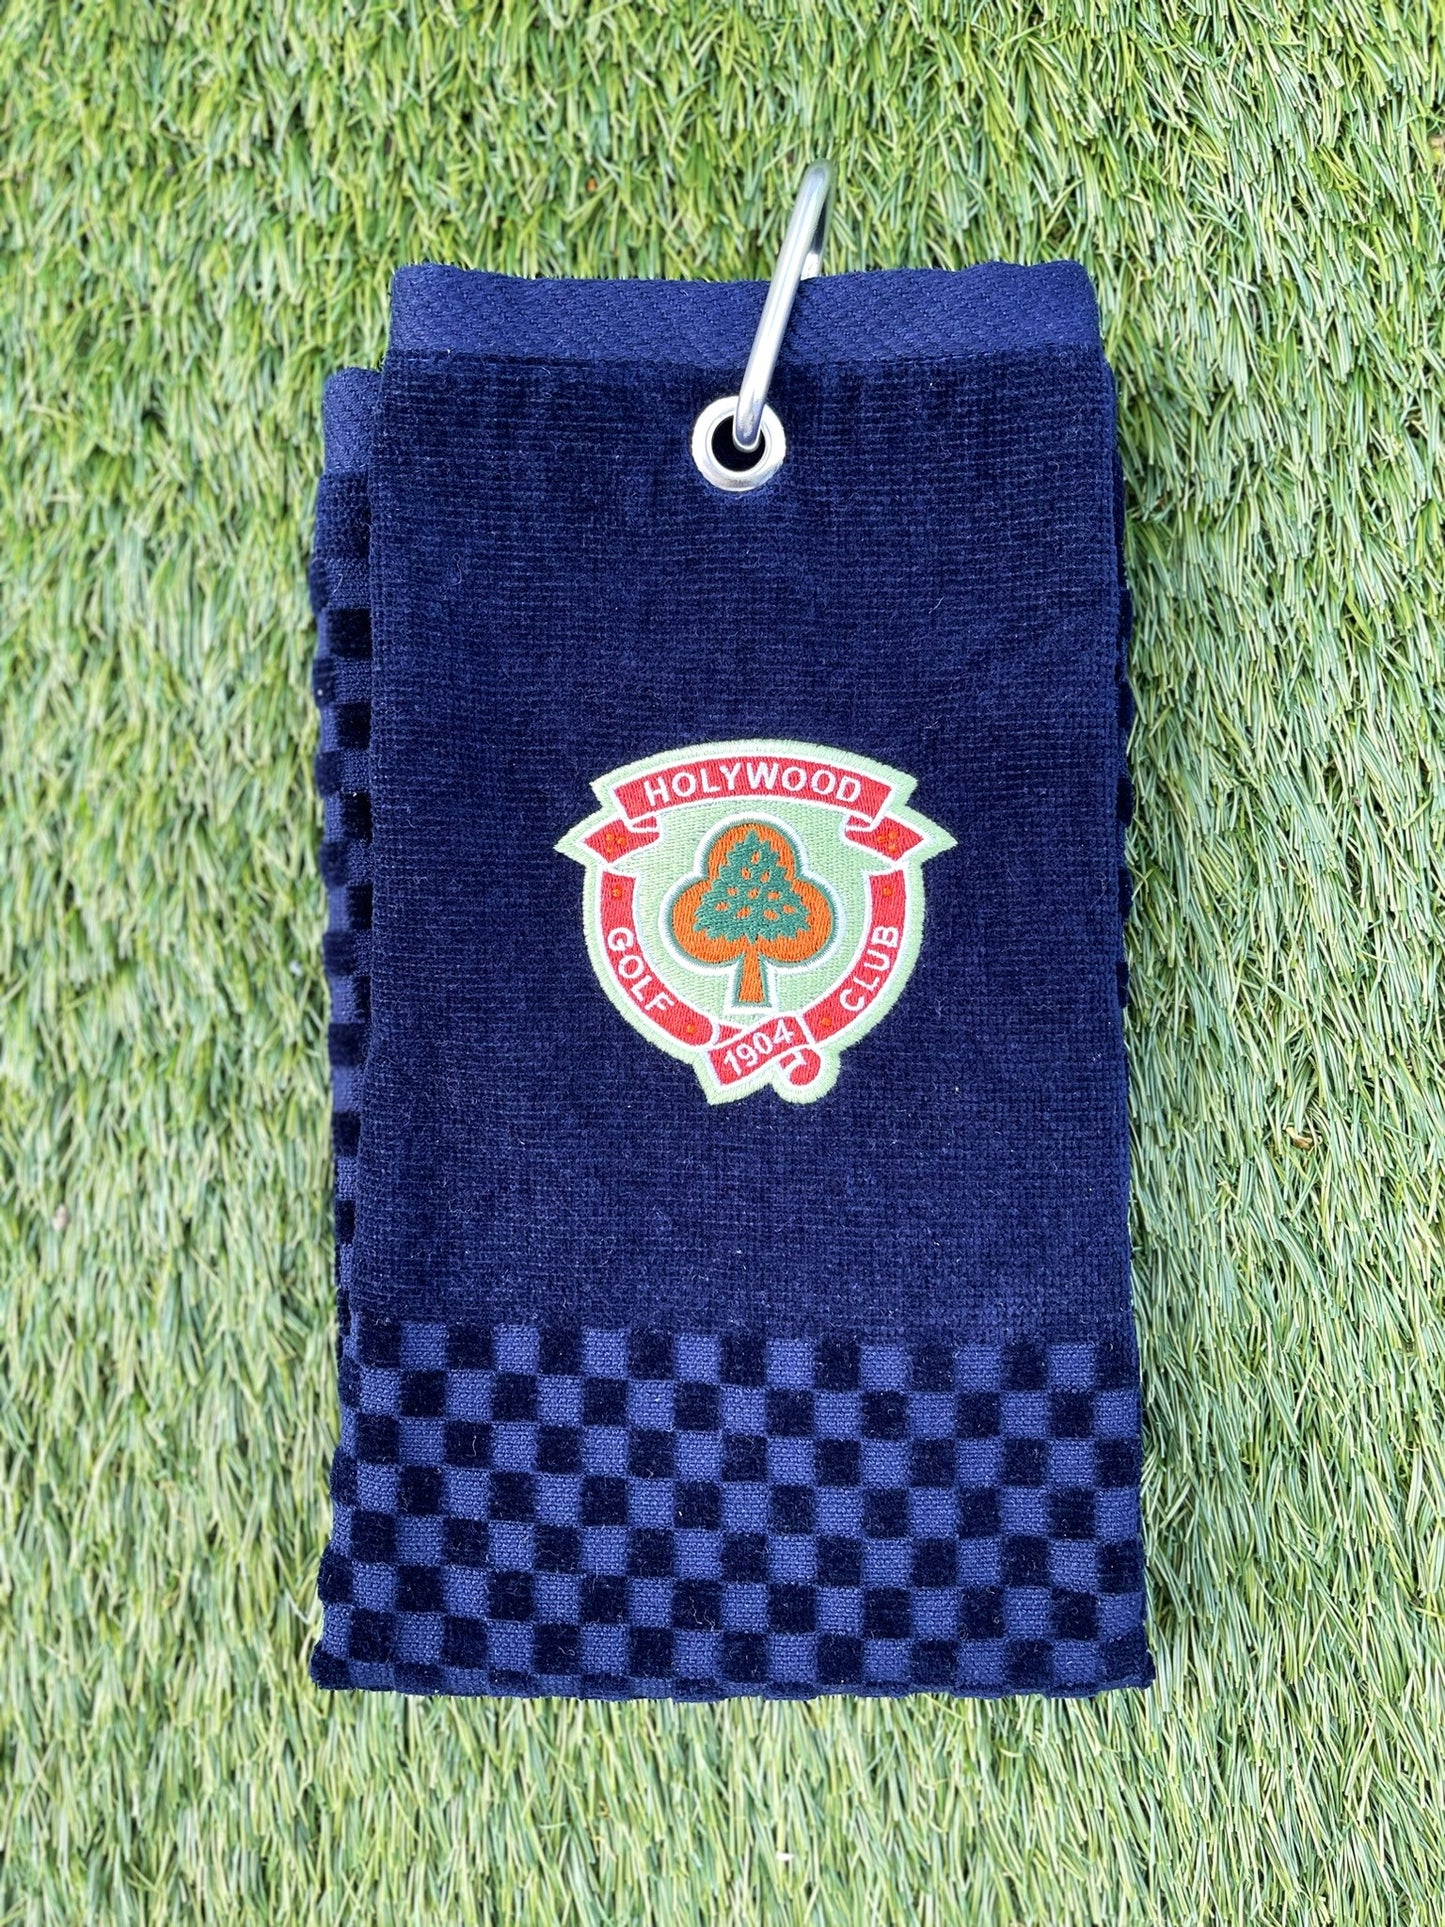 Holywood Golf Club Towel